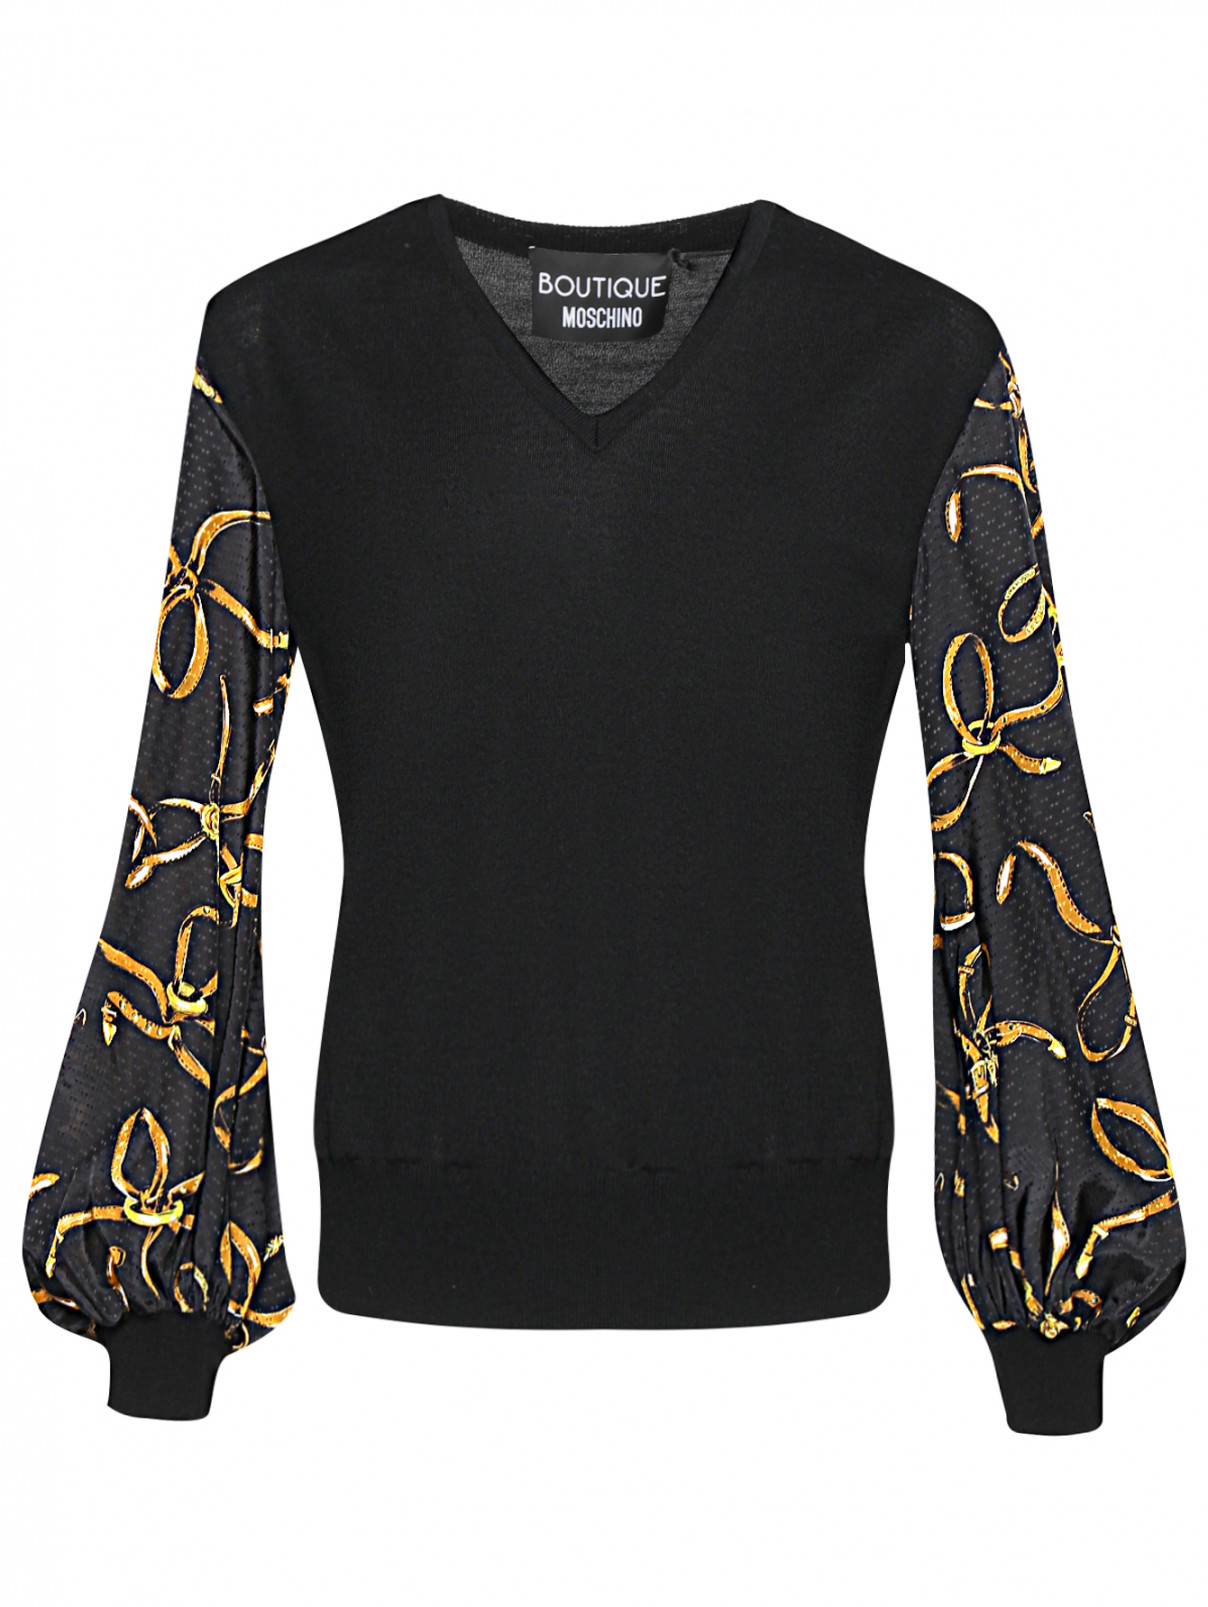 Джемпер из шерсти с узором на рукавах Moschino Boutique  –  Общий вид  – Цвет:  Черный